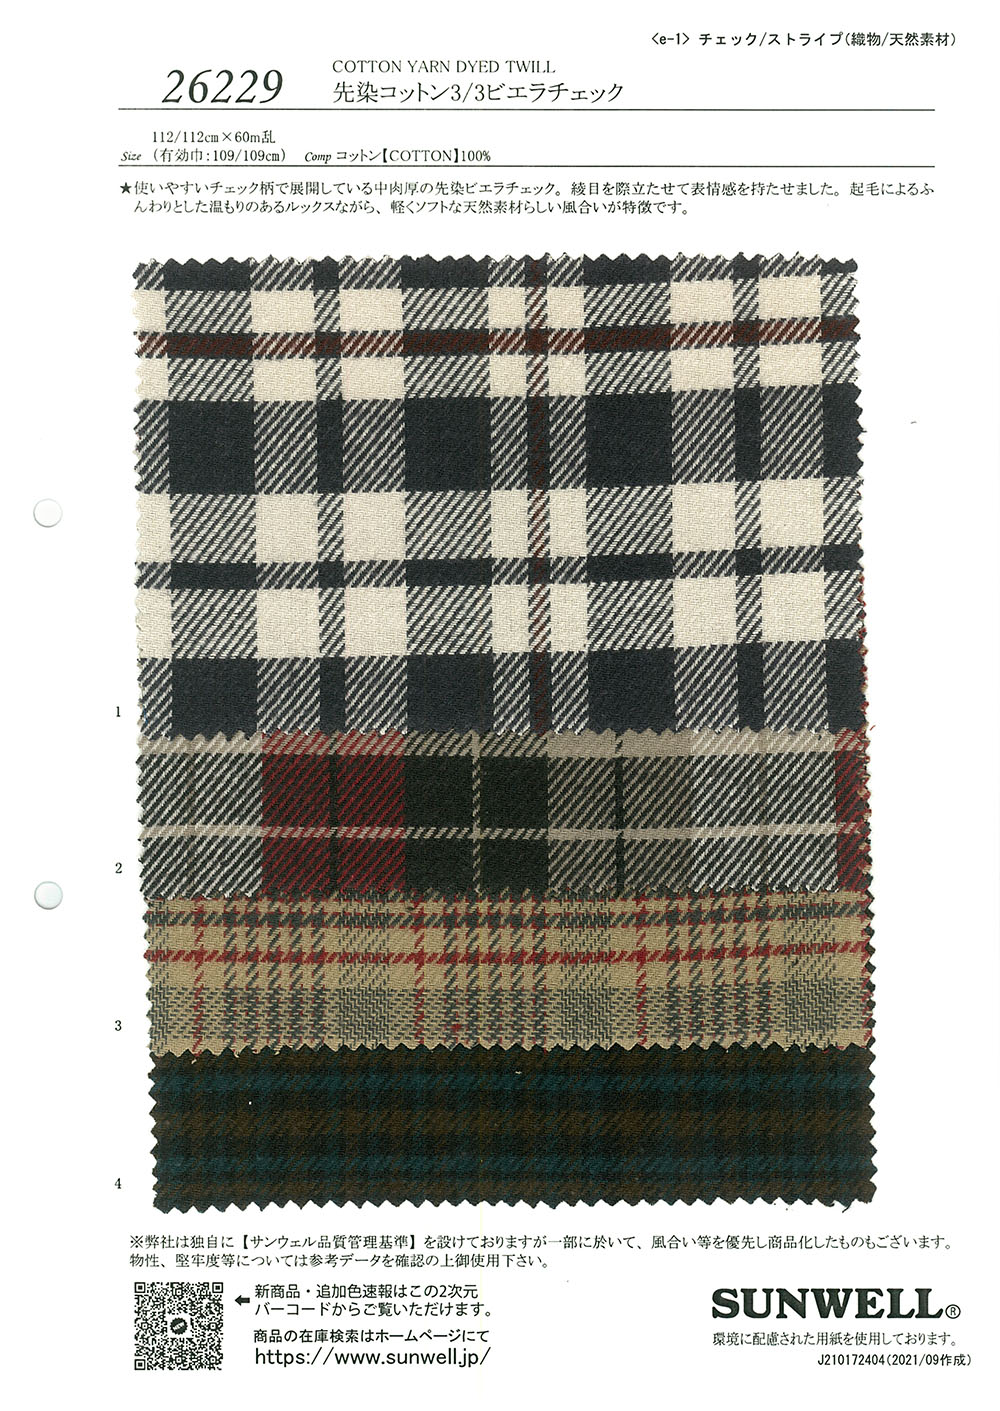 26229 Garngefärbte Baumwolle 3/3 Viyella-Karo[Textilgewebe] SUNWELL